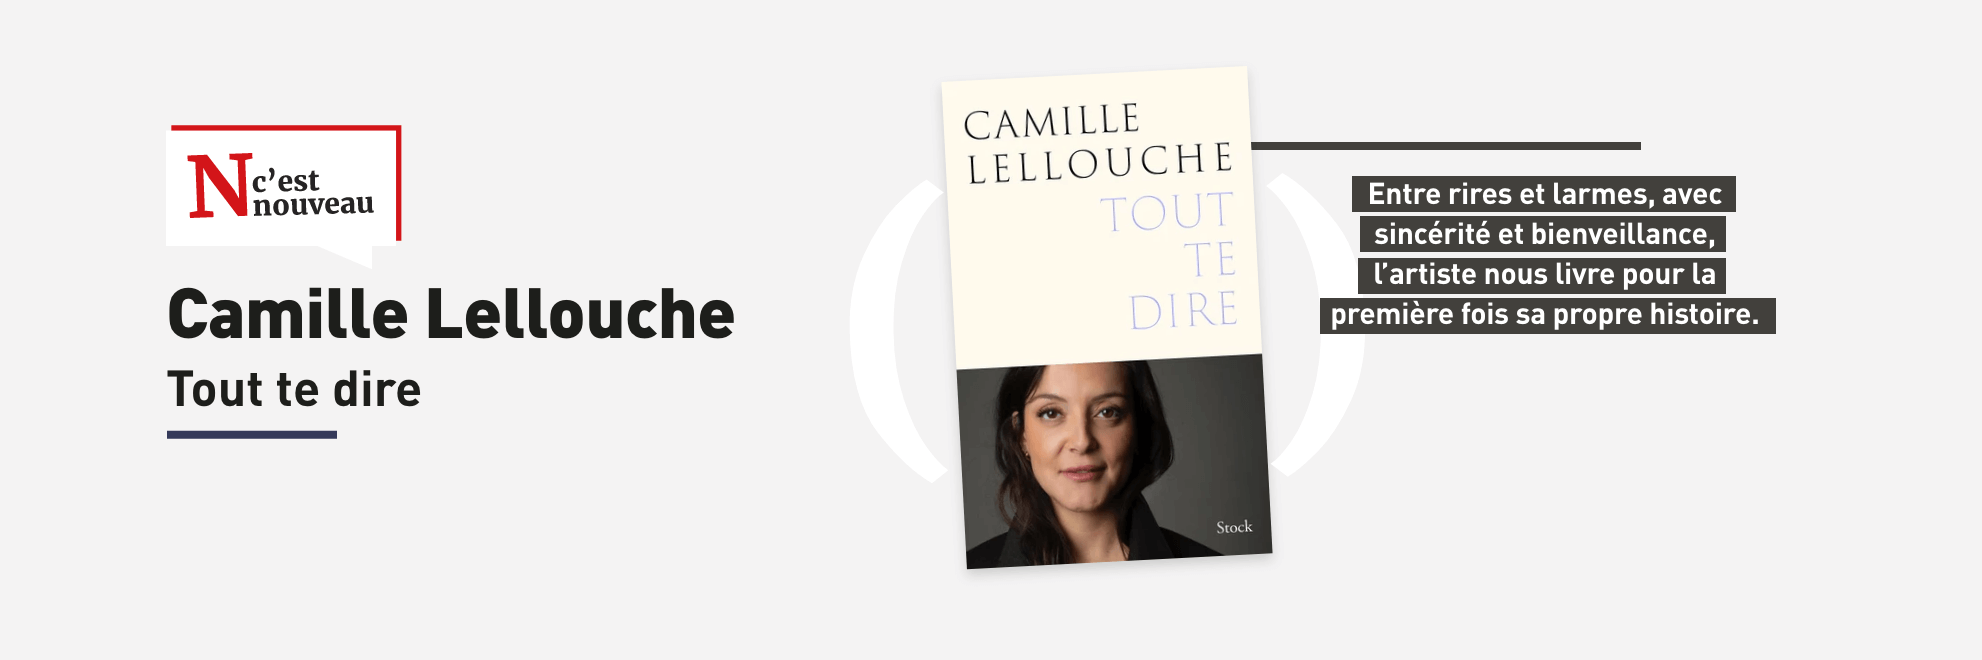 Nouveauté : Tout te dire de Camille Lellouche